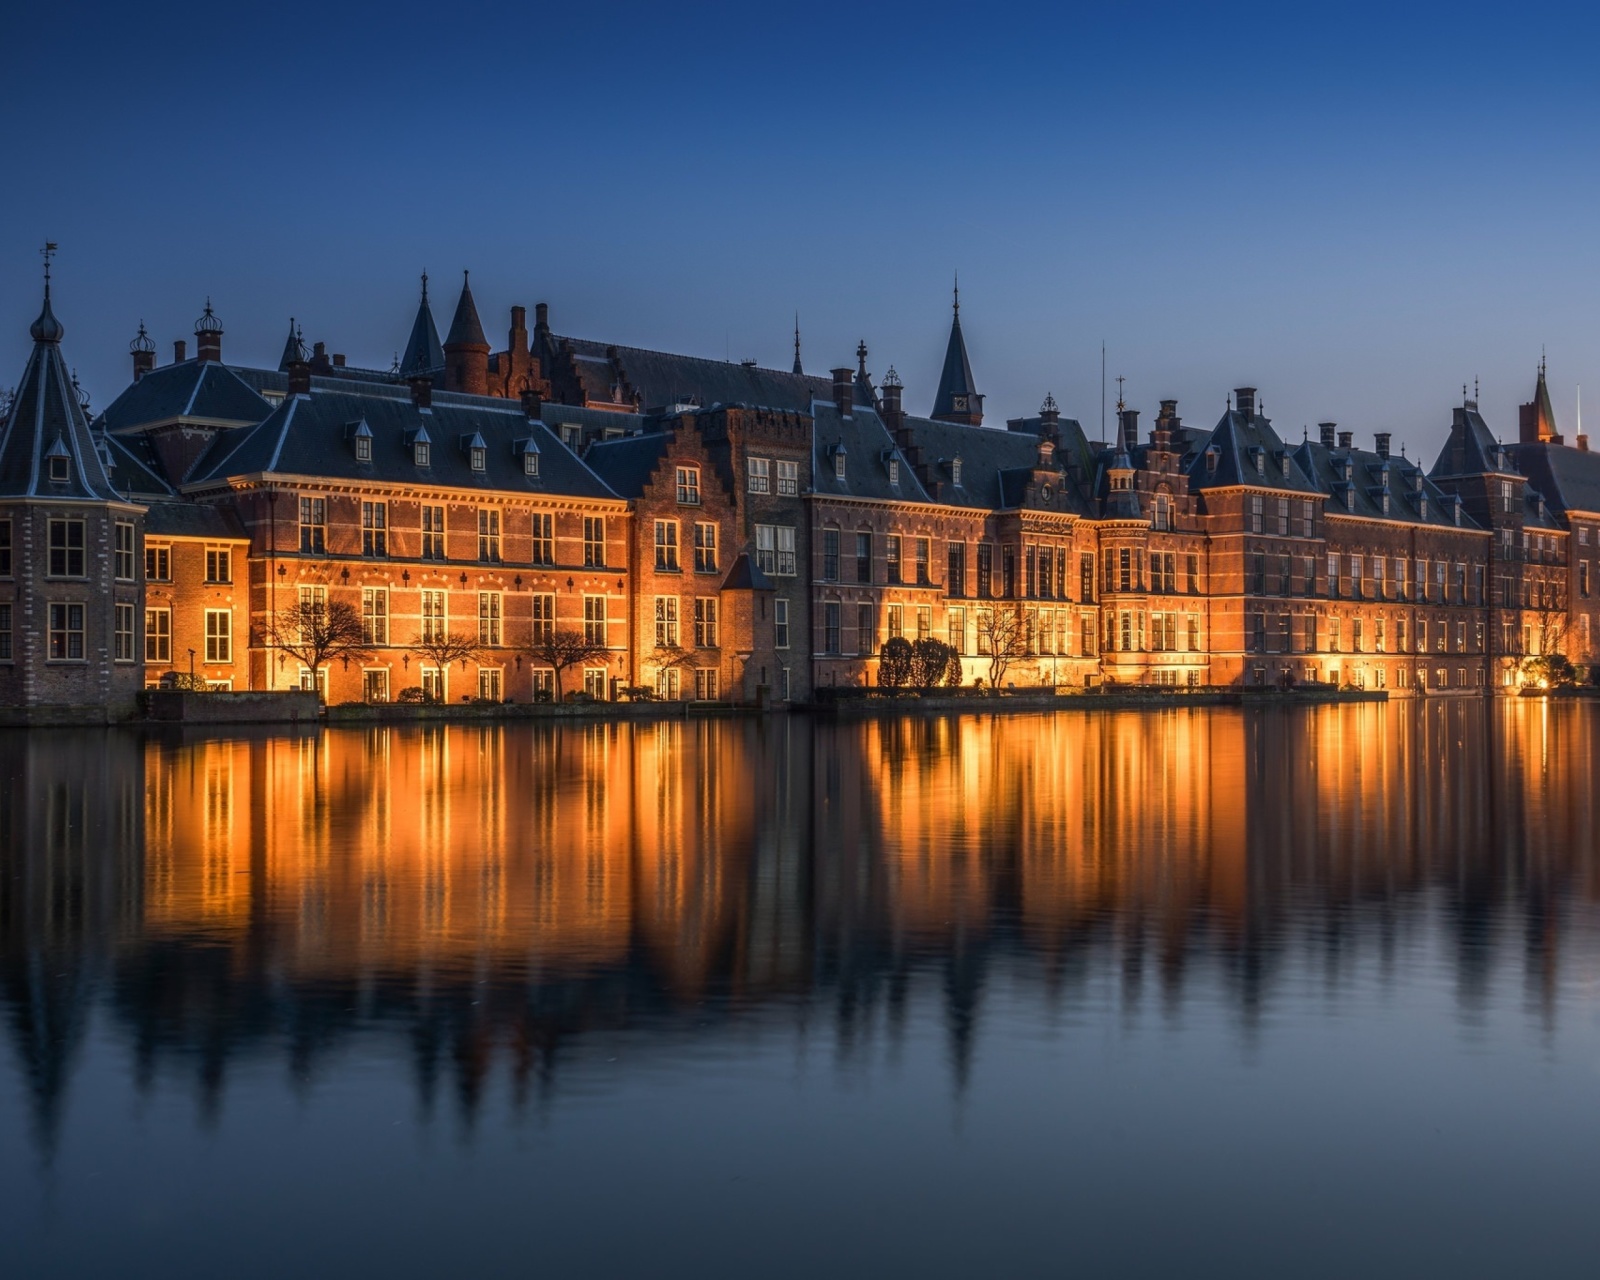 Binnenhof in Hague screenshot #1 1600x1280